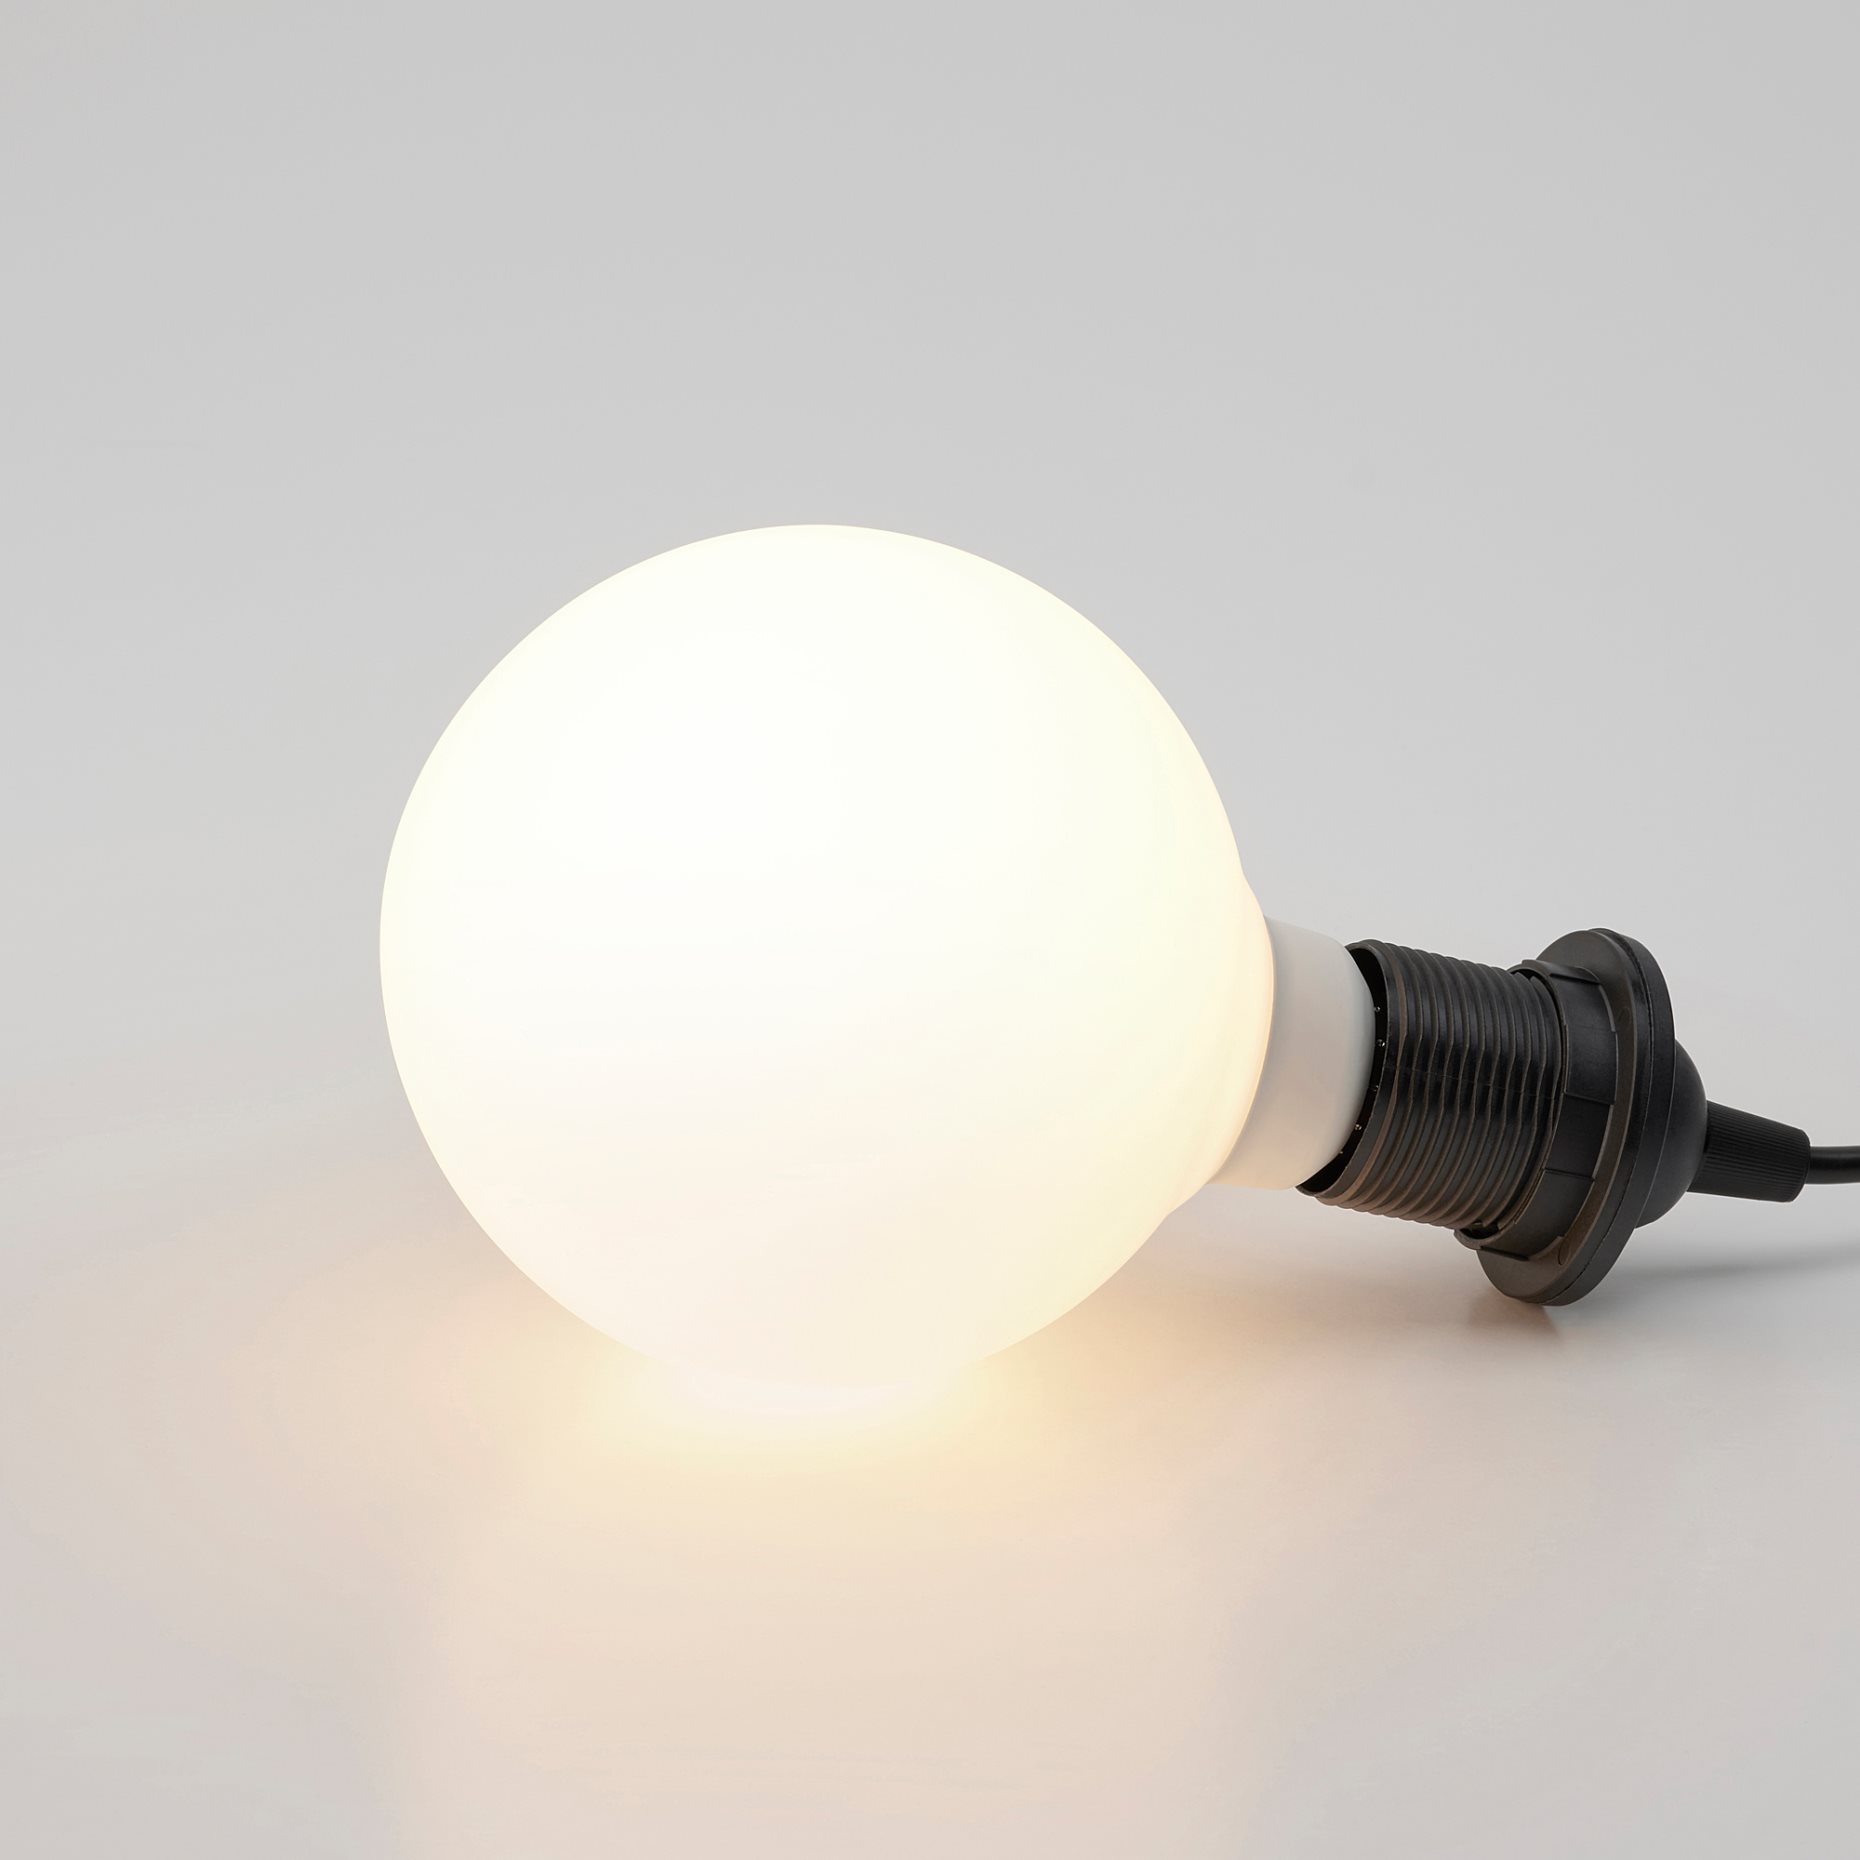 TRÅDFRI, LED крушка E27 470 лумена, безжично регулиране на светлината бял спектър, 204.413.33